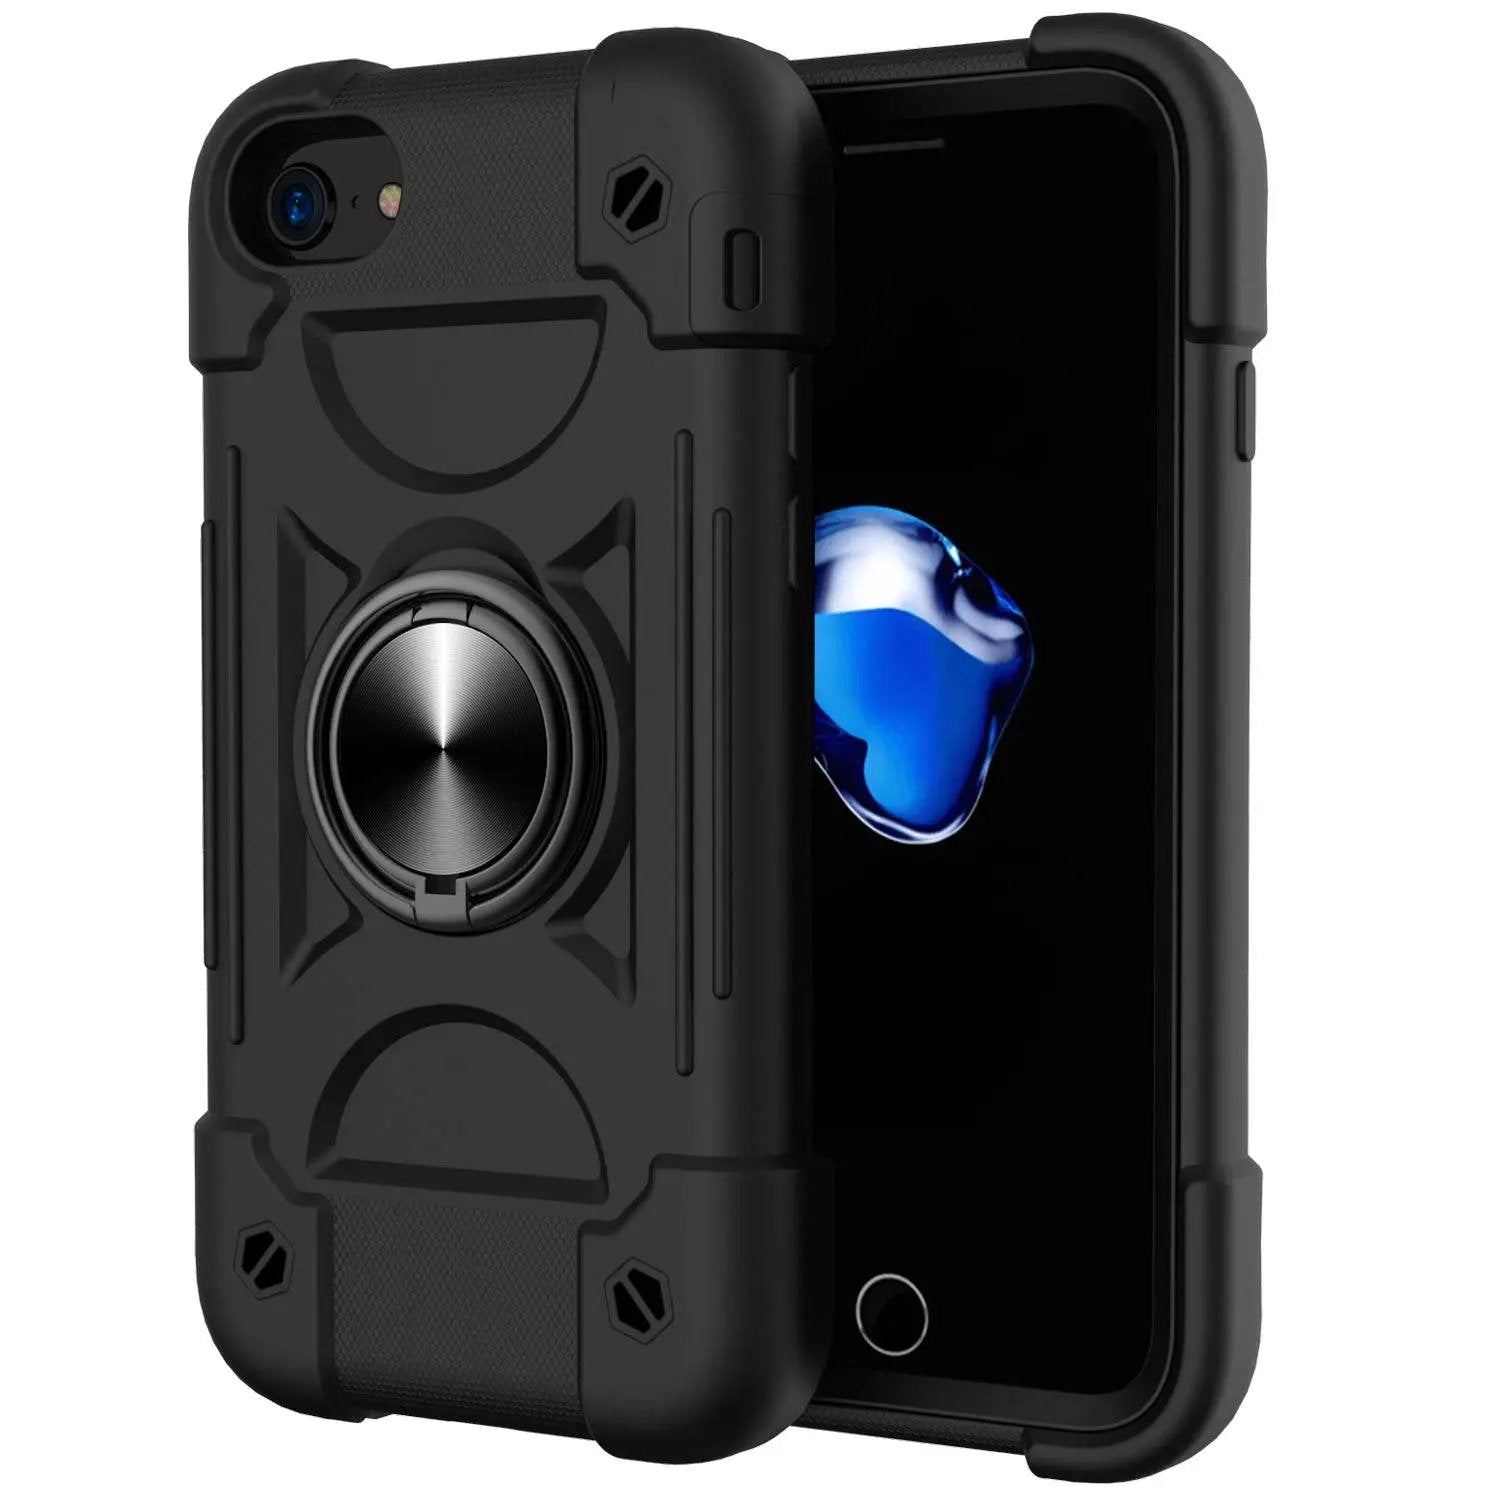 iPhone 6/7/8/SE Anti-drop Case - Hugmie